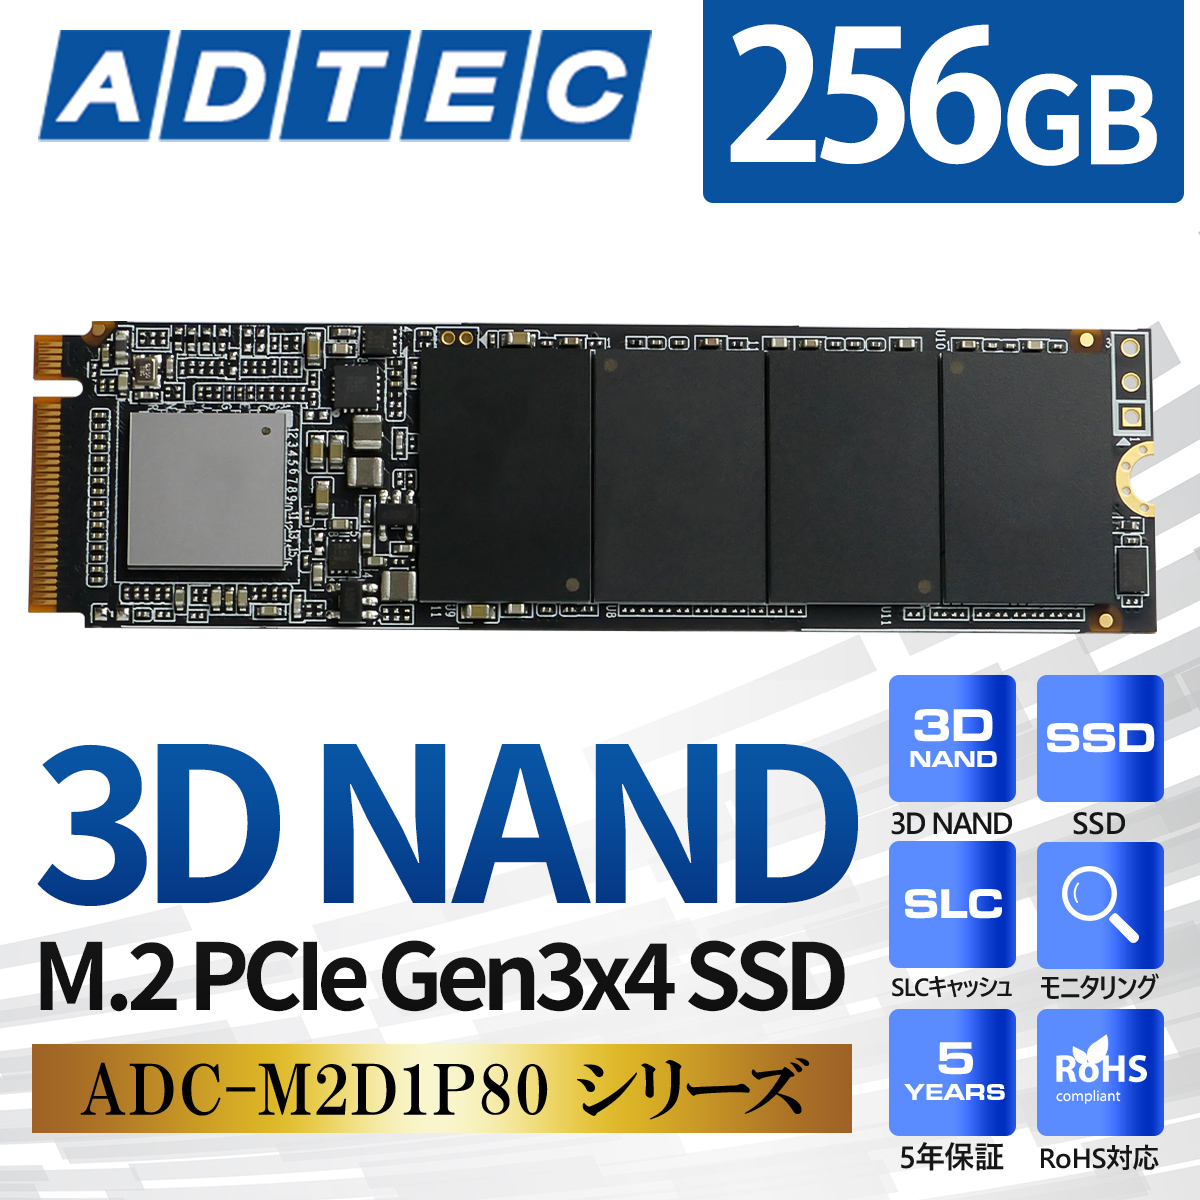 3D NAND M.2 PCIe Gen3x4 SSD ADC-M2D1P80 シリーズ - 株式